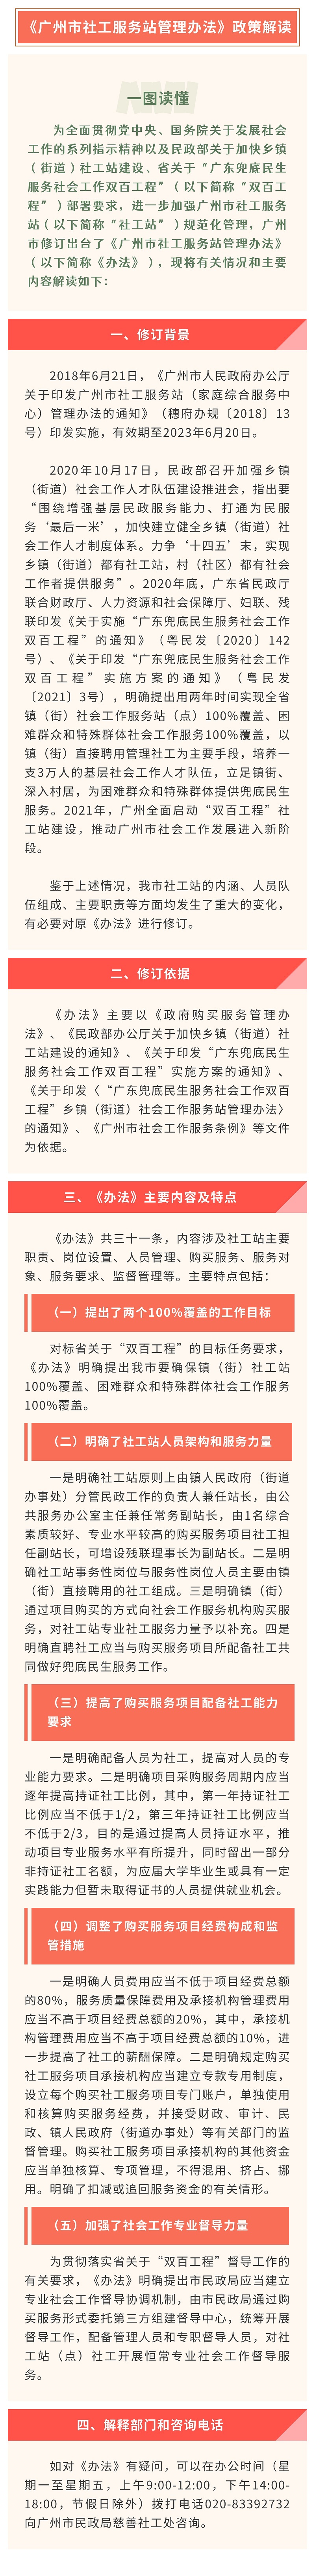 【一图读懂】《广州市社工服务站管理办法》.jpg